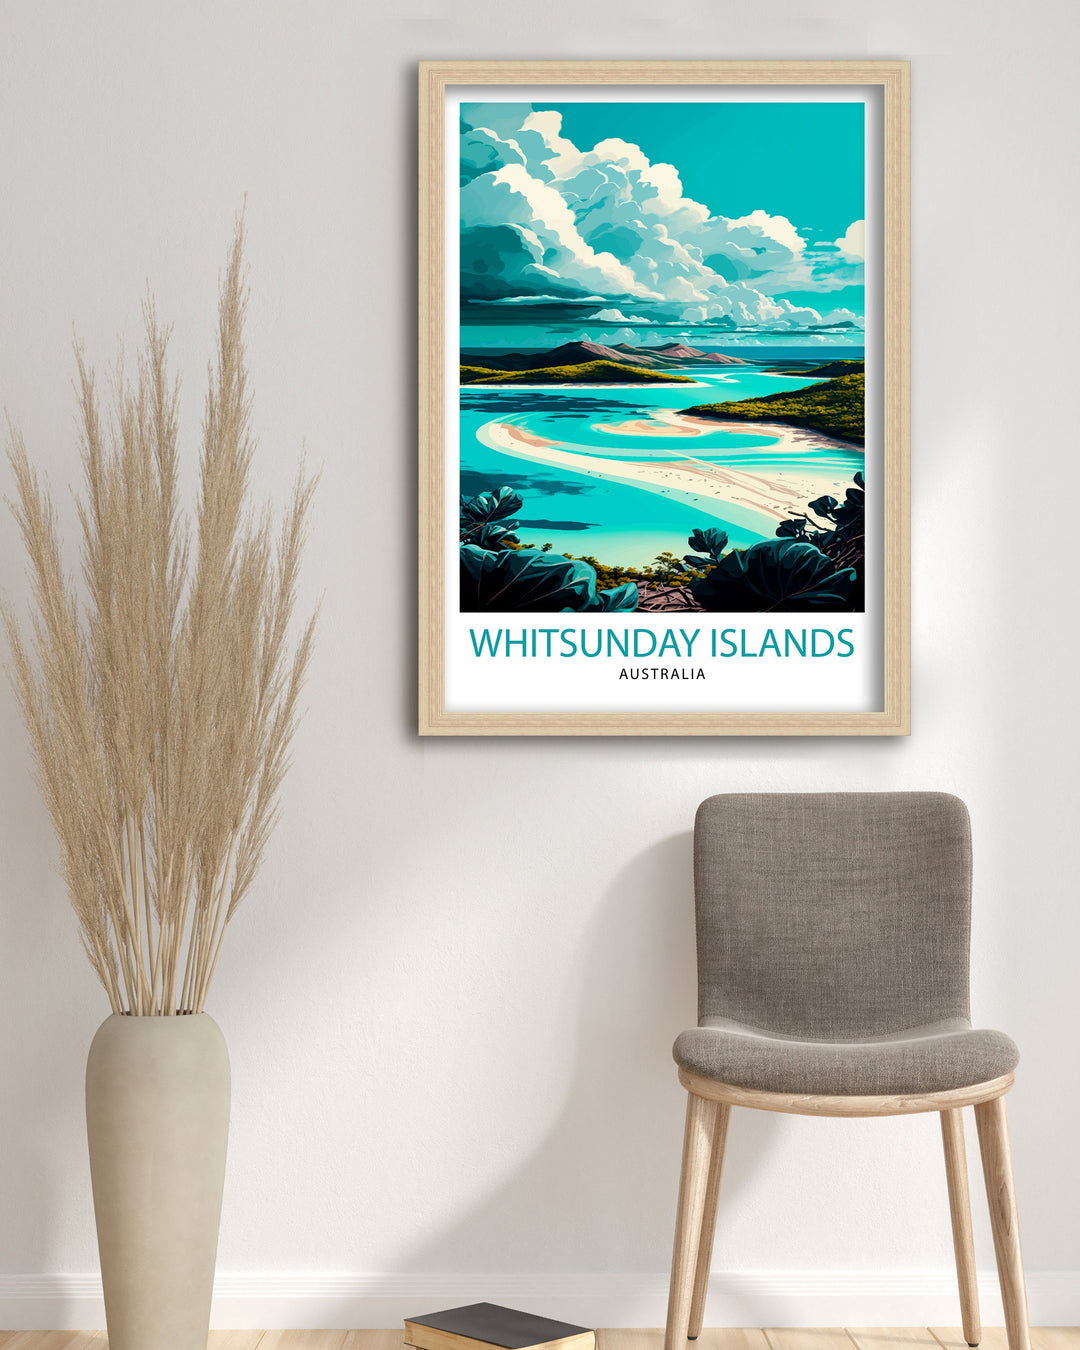 Whitsunday Australia Travel Poster Whitsunday Islands Wall Art Whitsunday Home Decor Australian Illustration Travel Poster Gift Australia